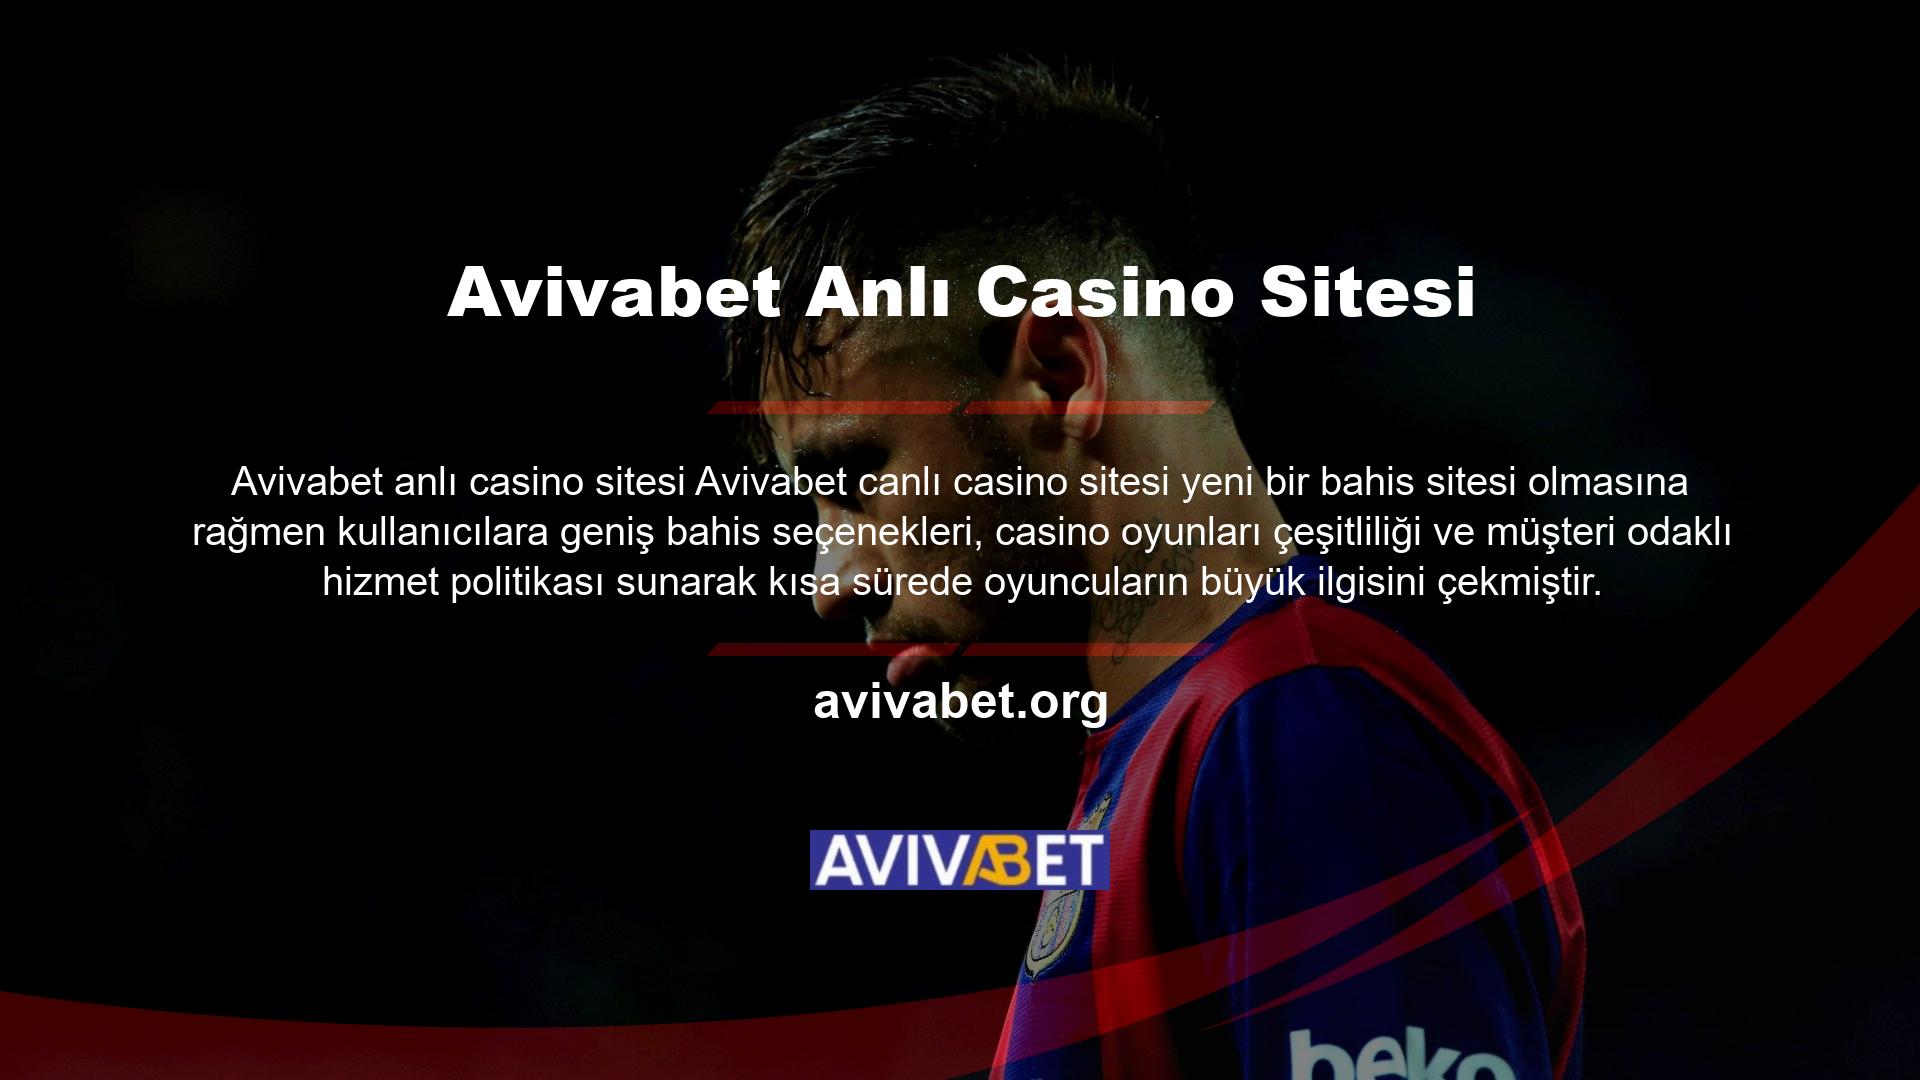 Site, oyuncuların çok fazla ilgi göstermesini istemediğinden spor bahisleri ve casino oyunlarında Türk oyunculara özel bonuslar düzenlemektedir